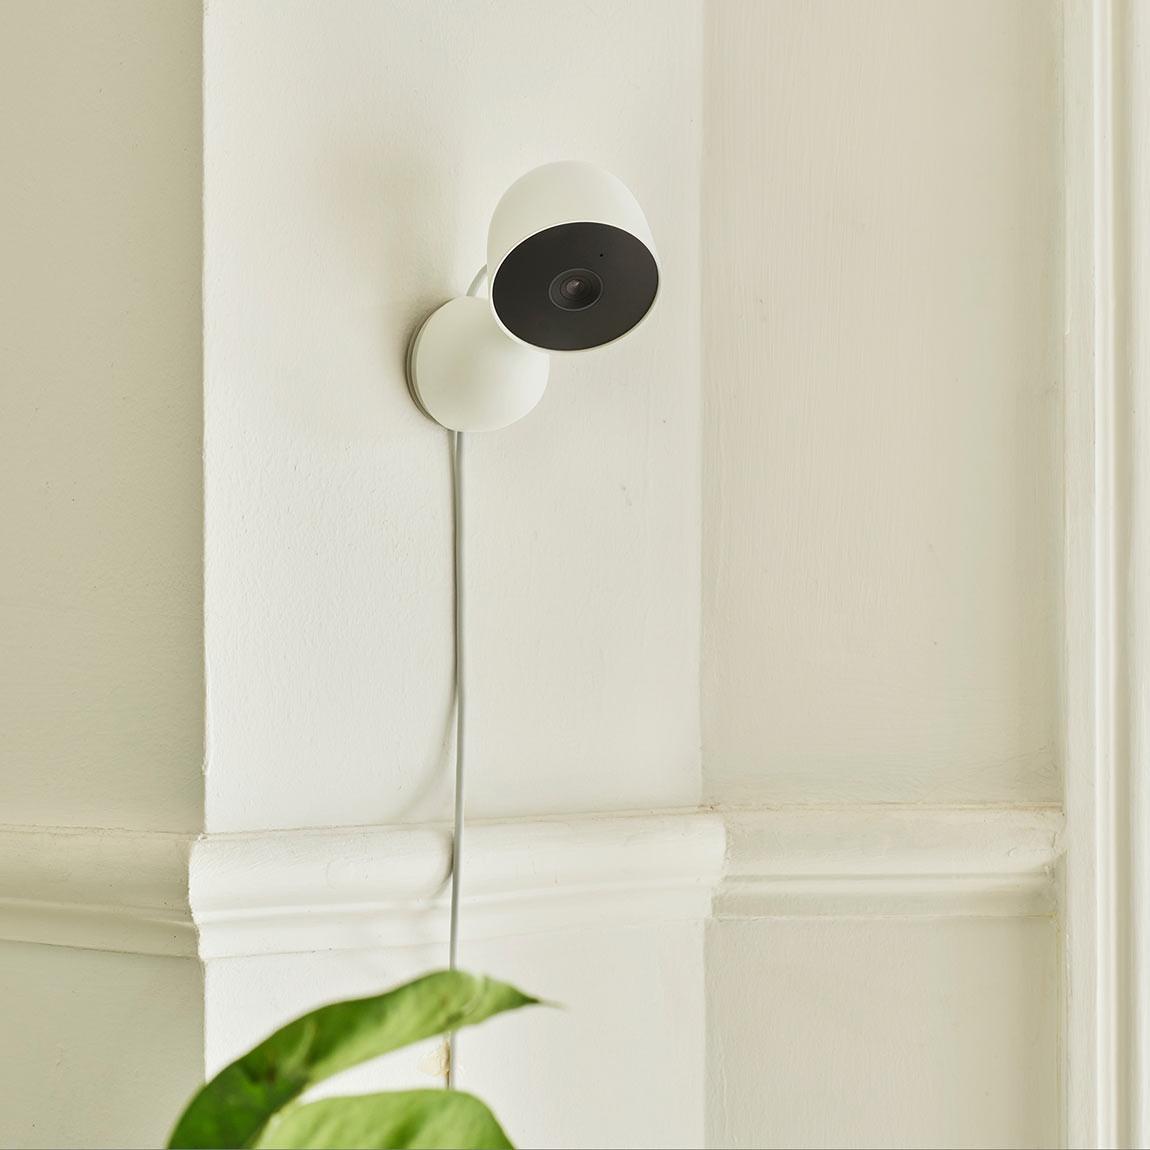 Google Nest Cam (mit Akku) + Google Nest Cam (Indoor mit Kabel) - Lifestyle - Nest Cam indoor an Wand